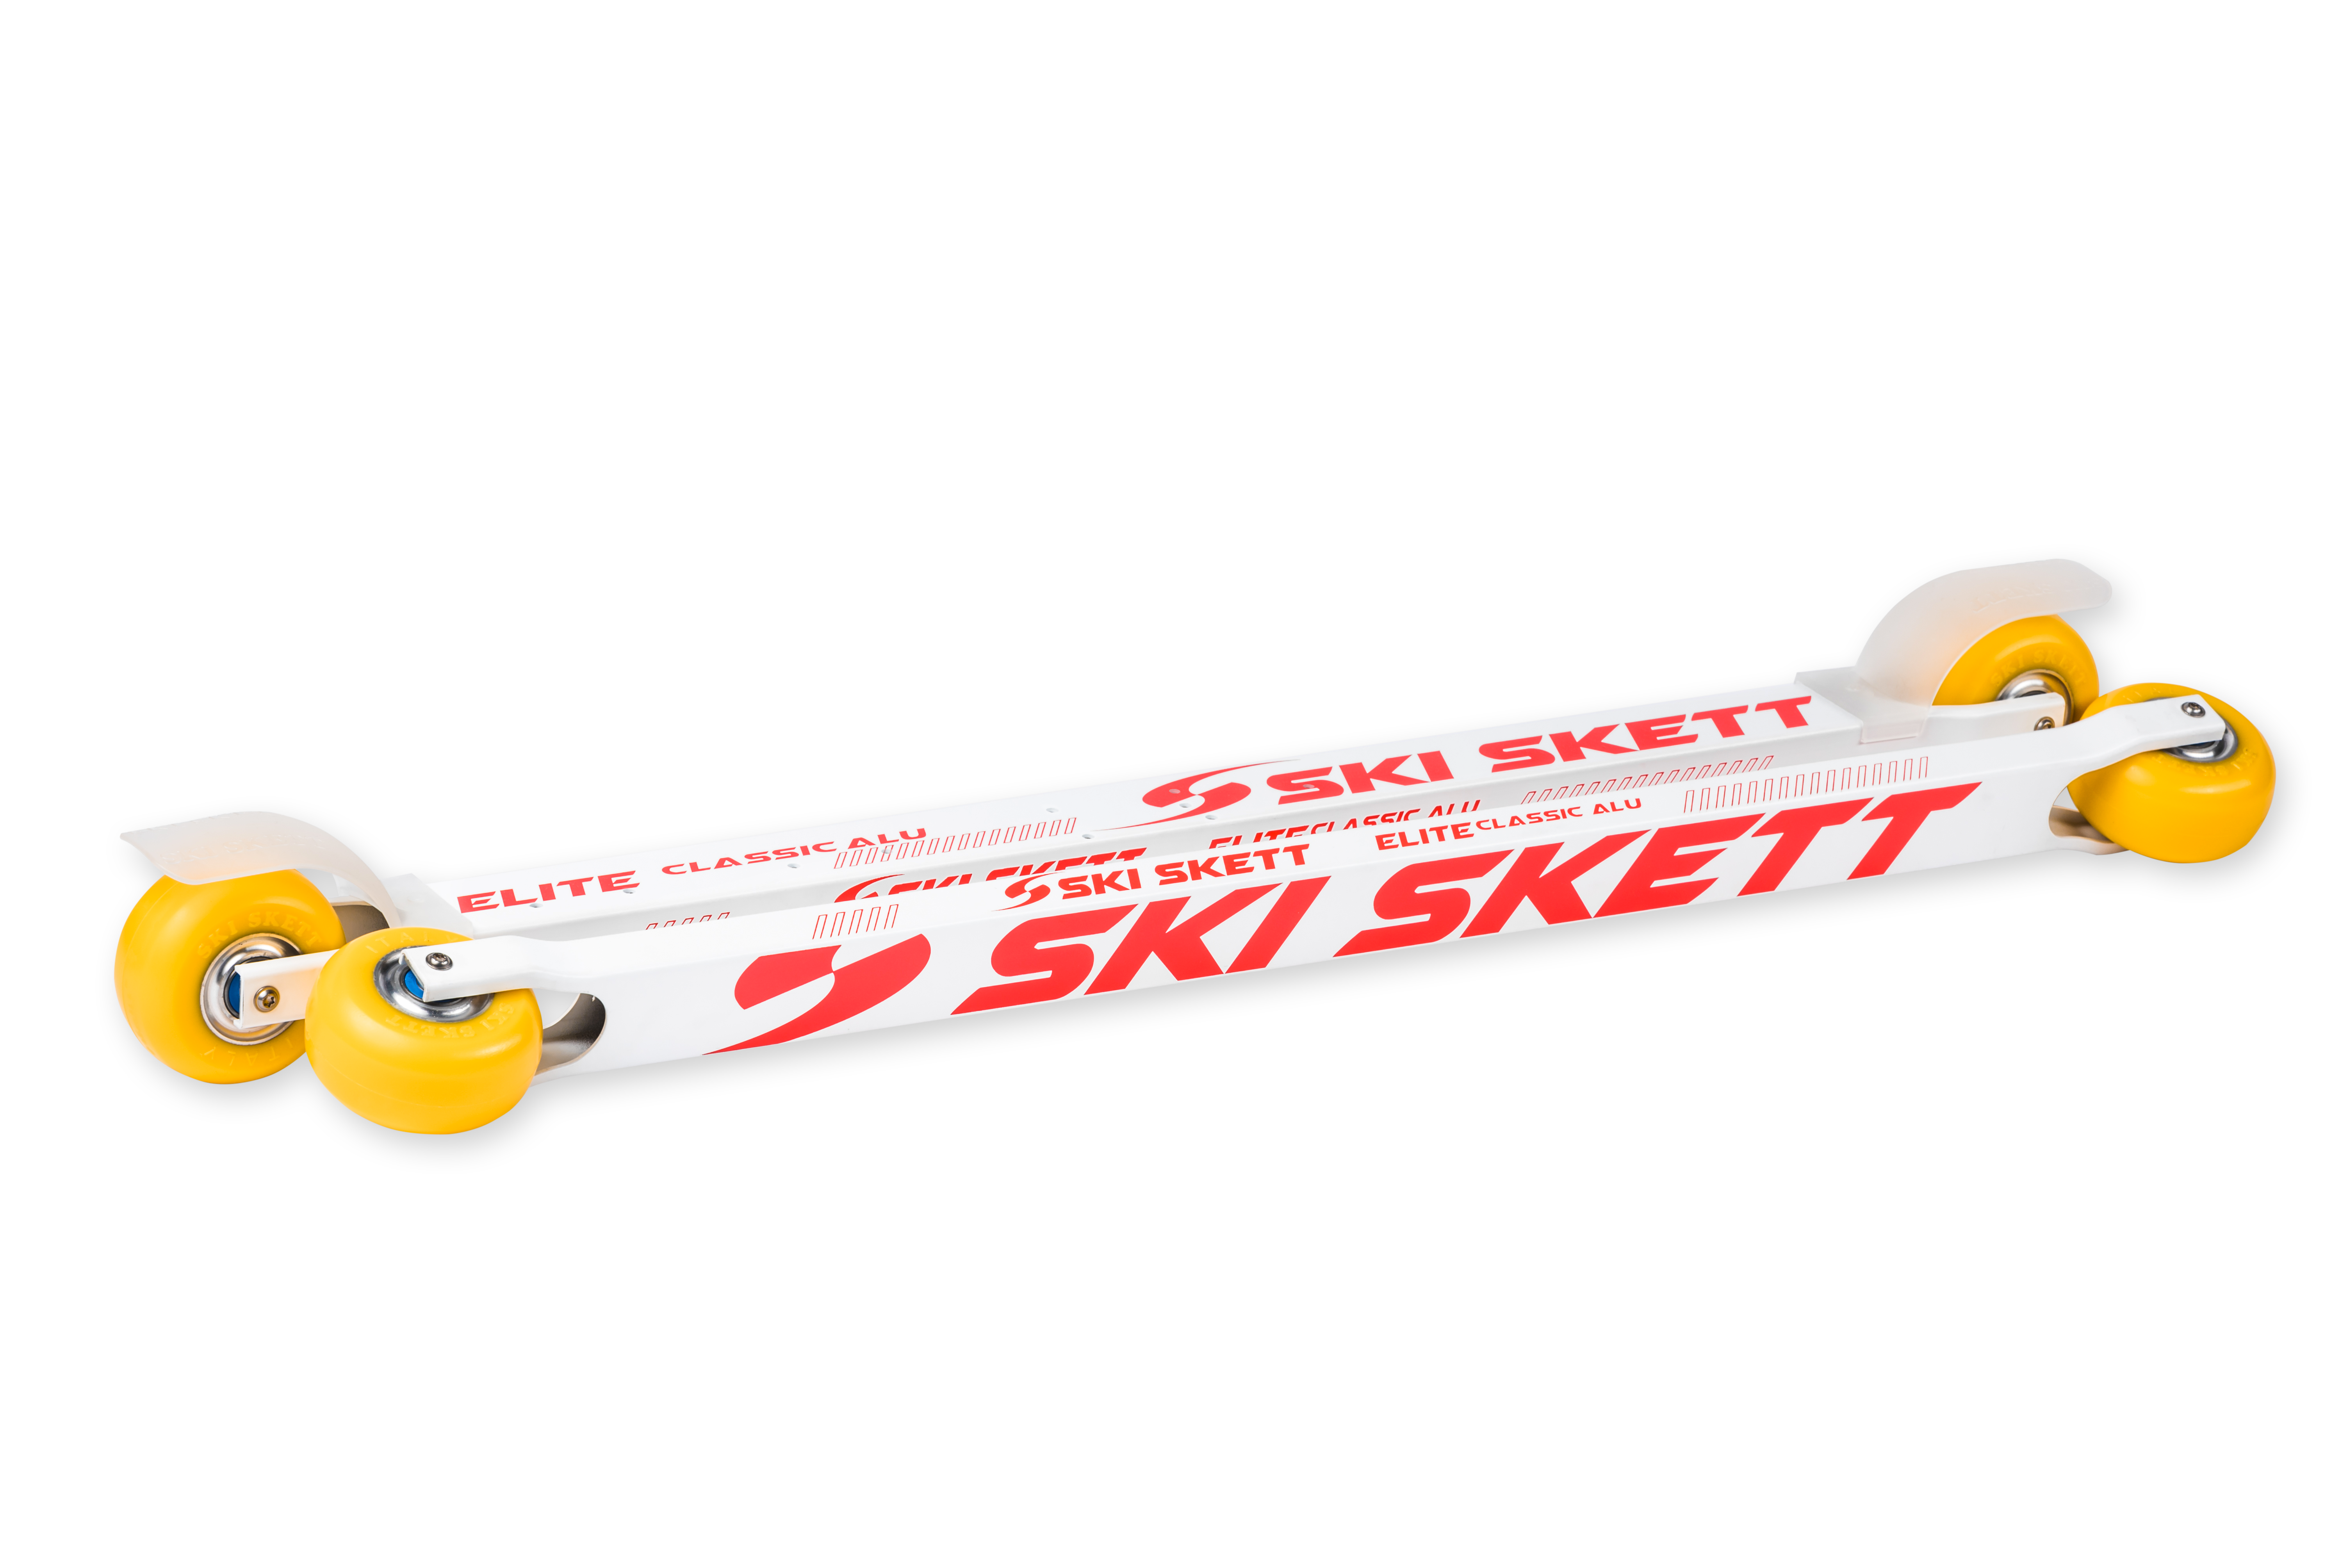 skiroll, roller ski, elite, classic, cross-country ski